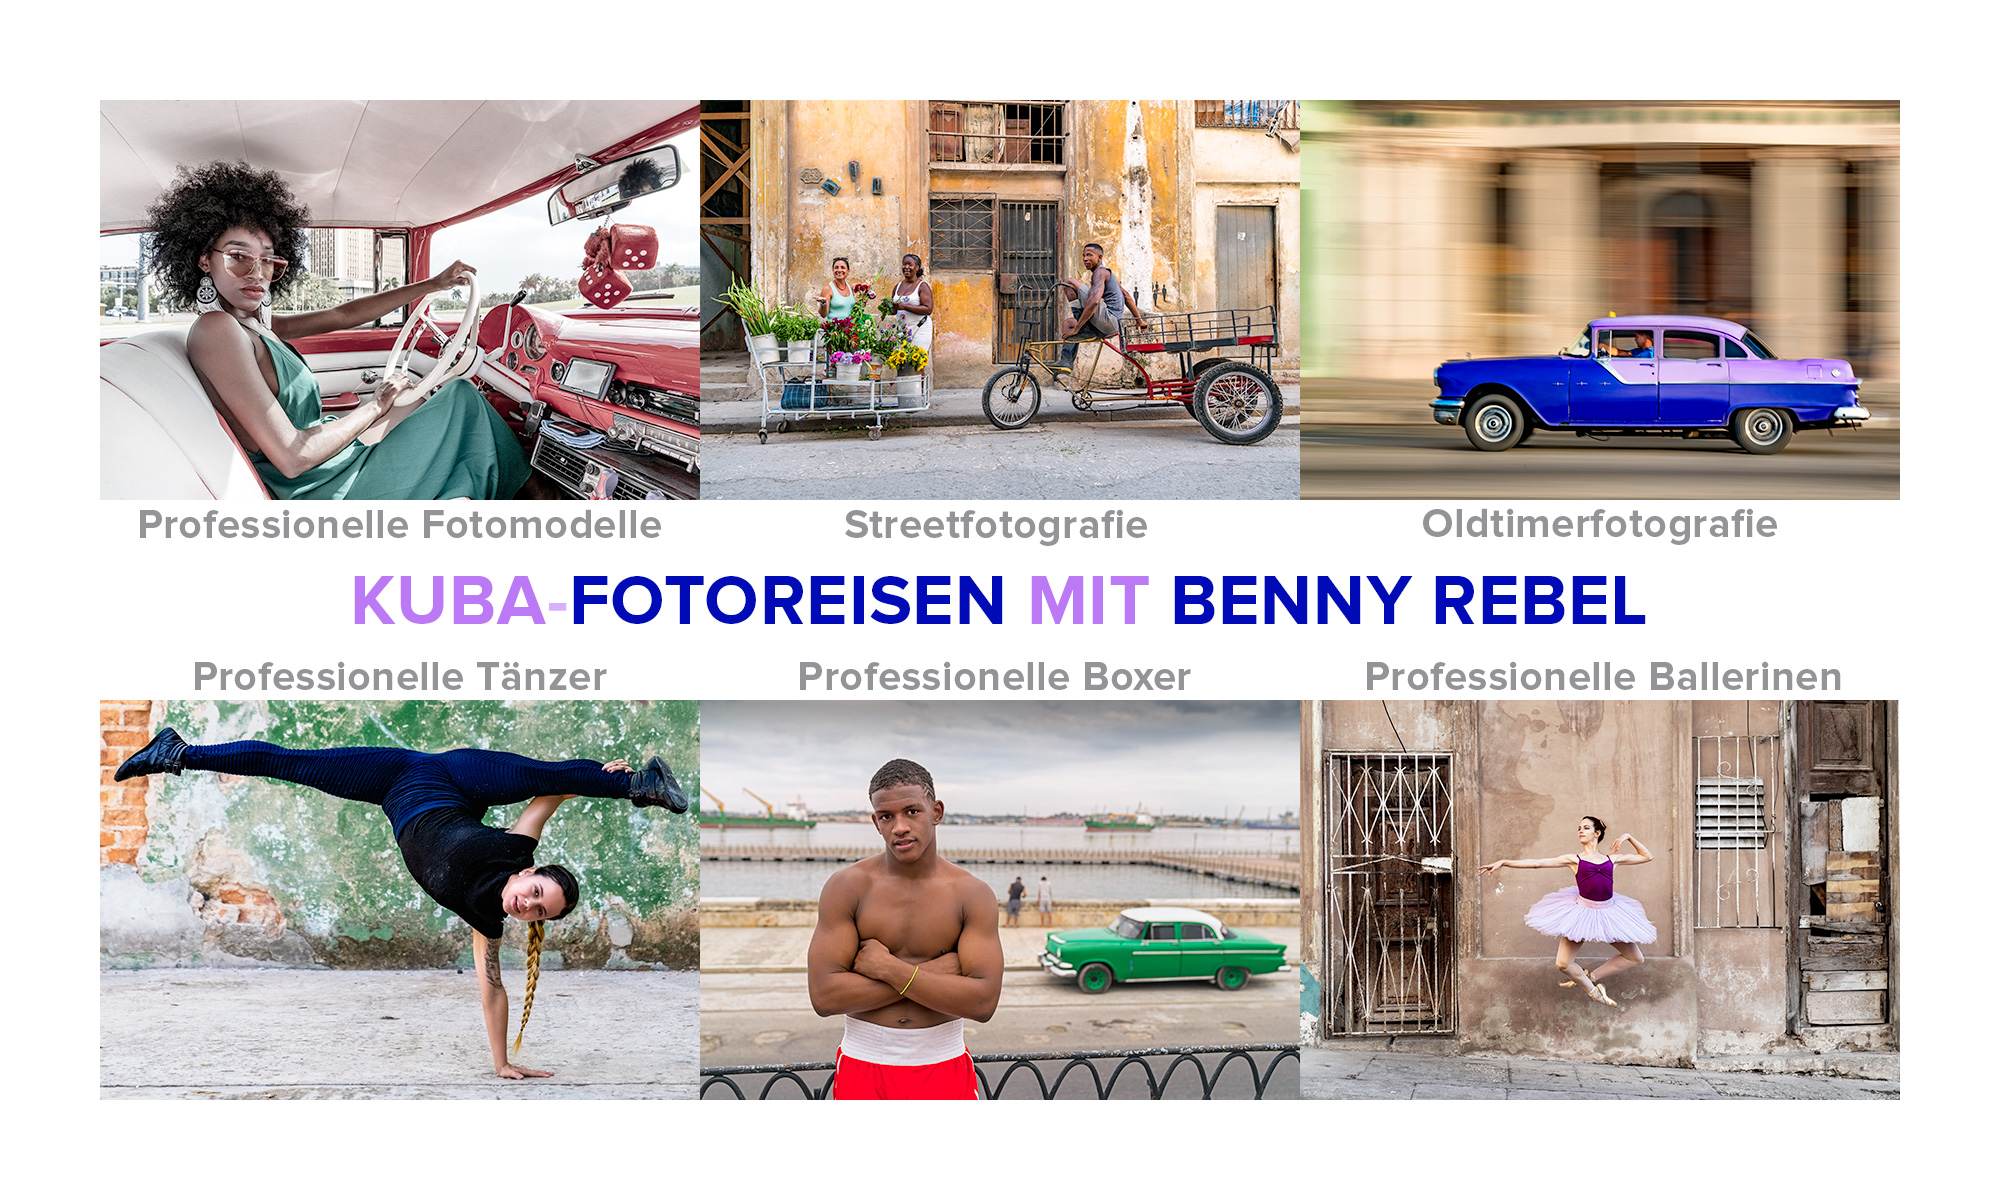 Kuba Fotoreise mit Benny Rebel